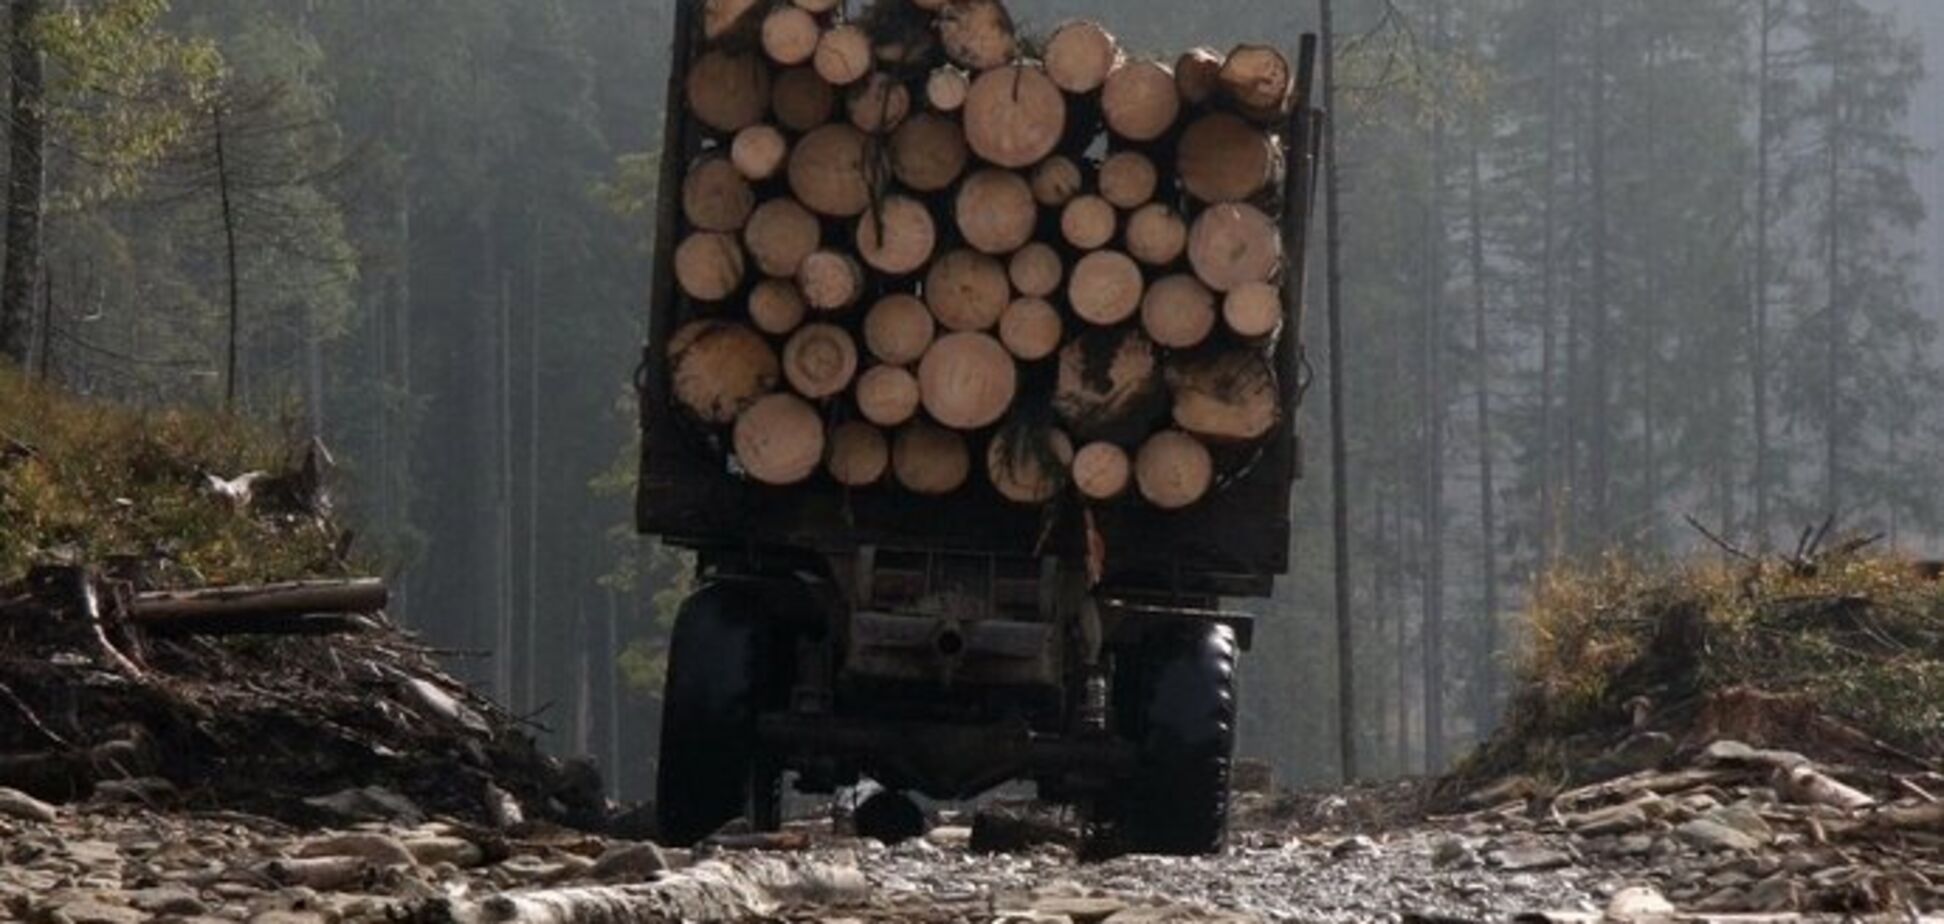 Деревообробні підприємства попередили владу, що не купуватимуть деревину через блокаду кордонів та високі ціни